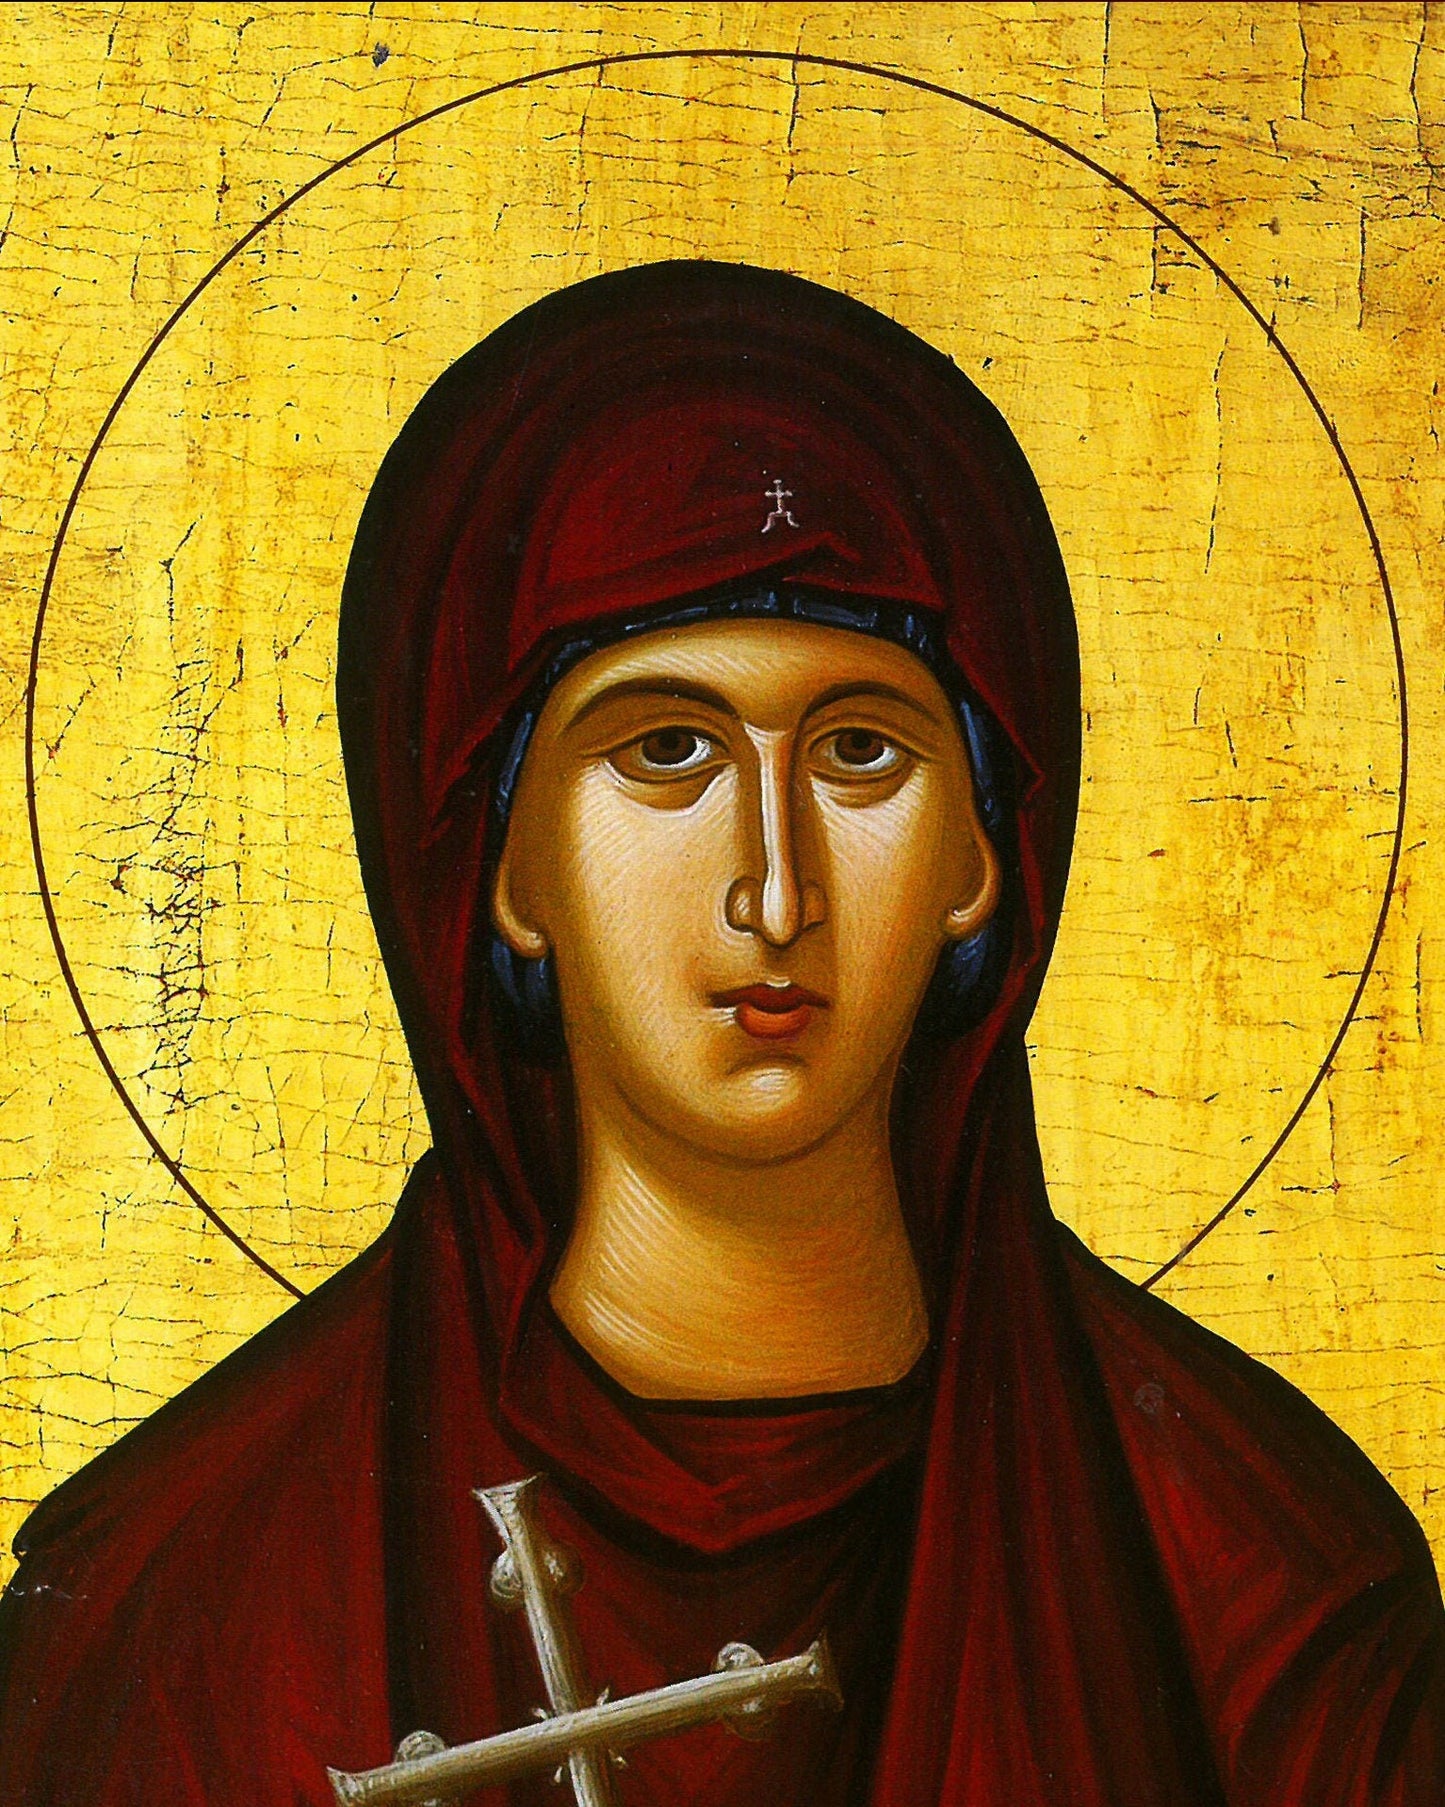 Saint Eudokia icon, Handmade Greek Orthodox icon of St Evdokia of Heliopolis, Byzantine art wall hanging icon wood plaque, religious decor TheHolyArt